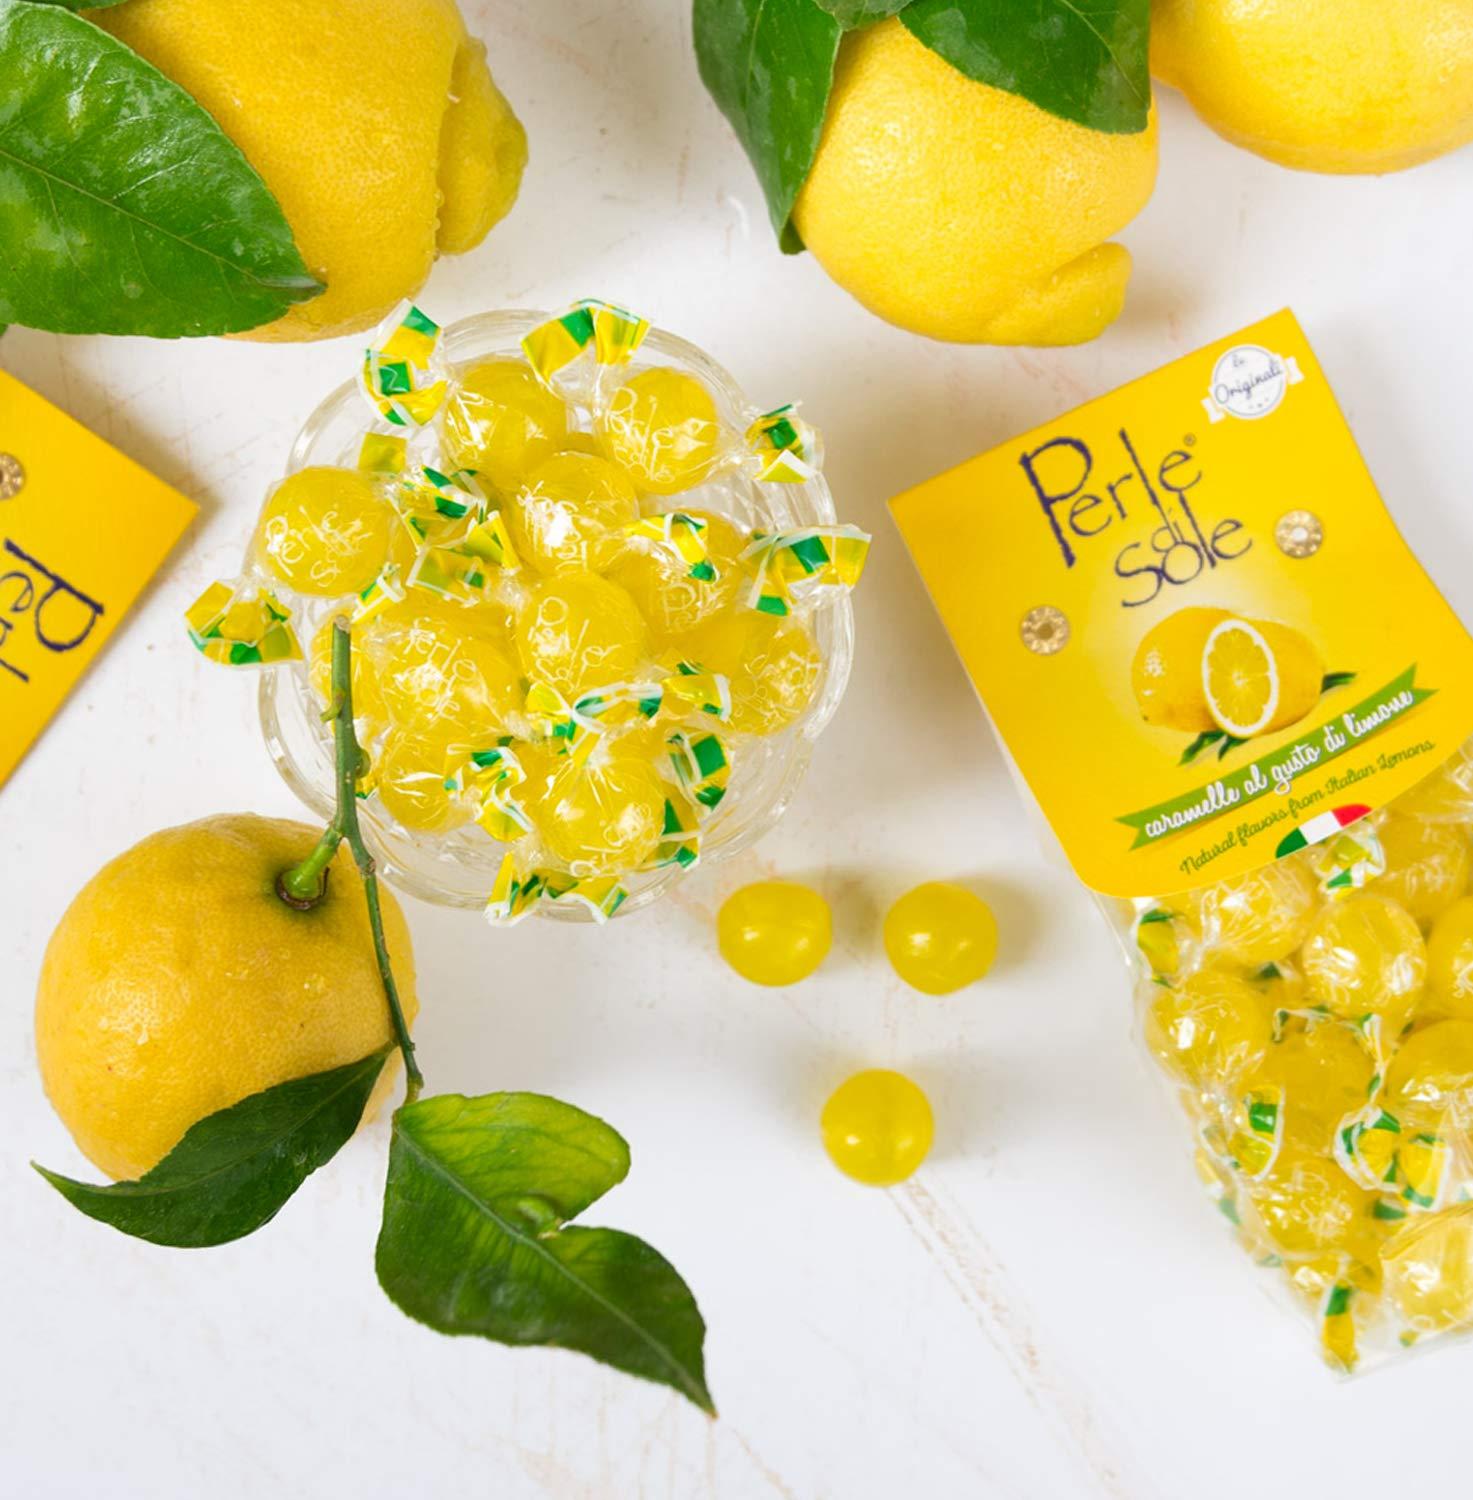 Perle di Sole Original Lemon Drops – Beautyhabit